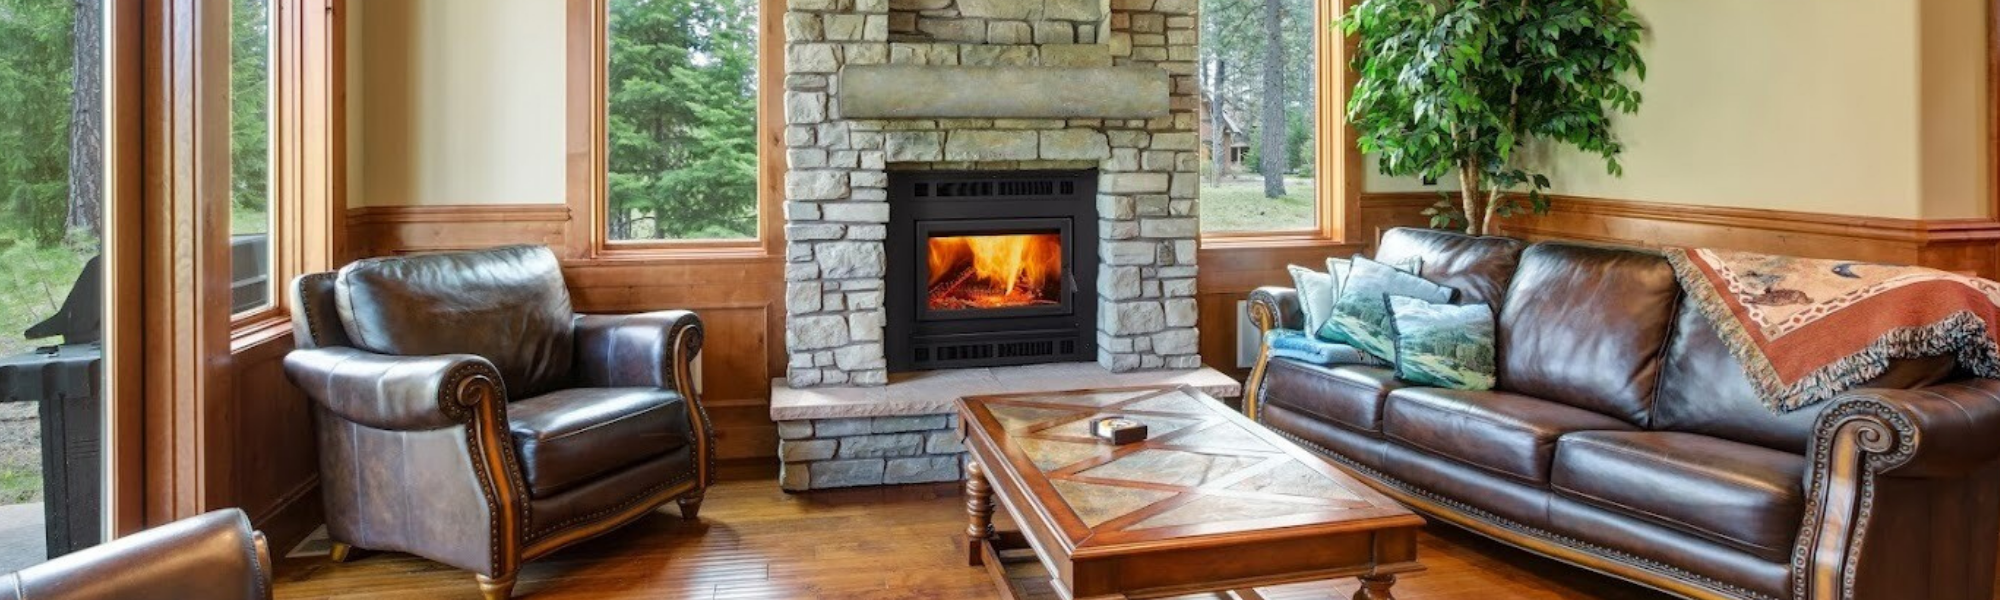 Cozy wood burning fireplace